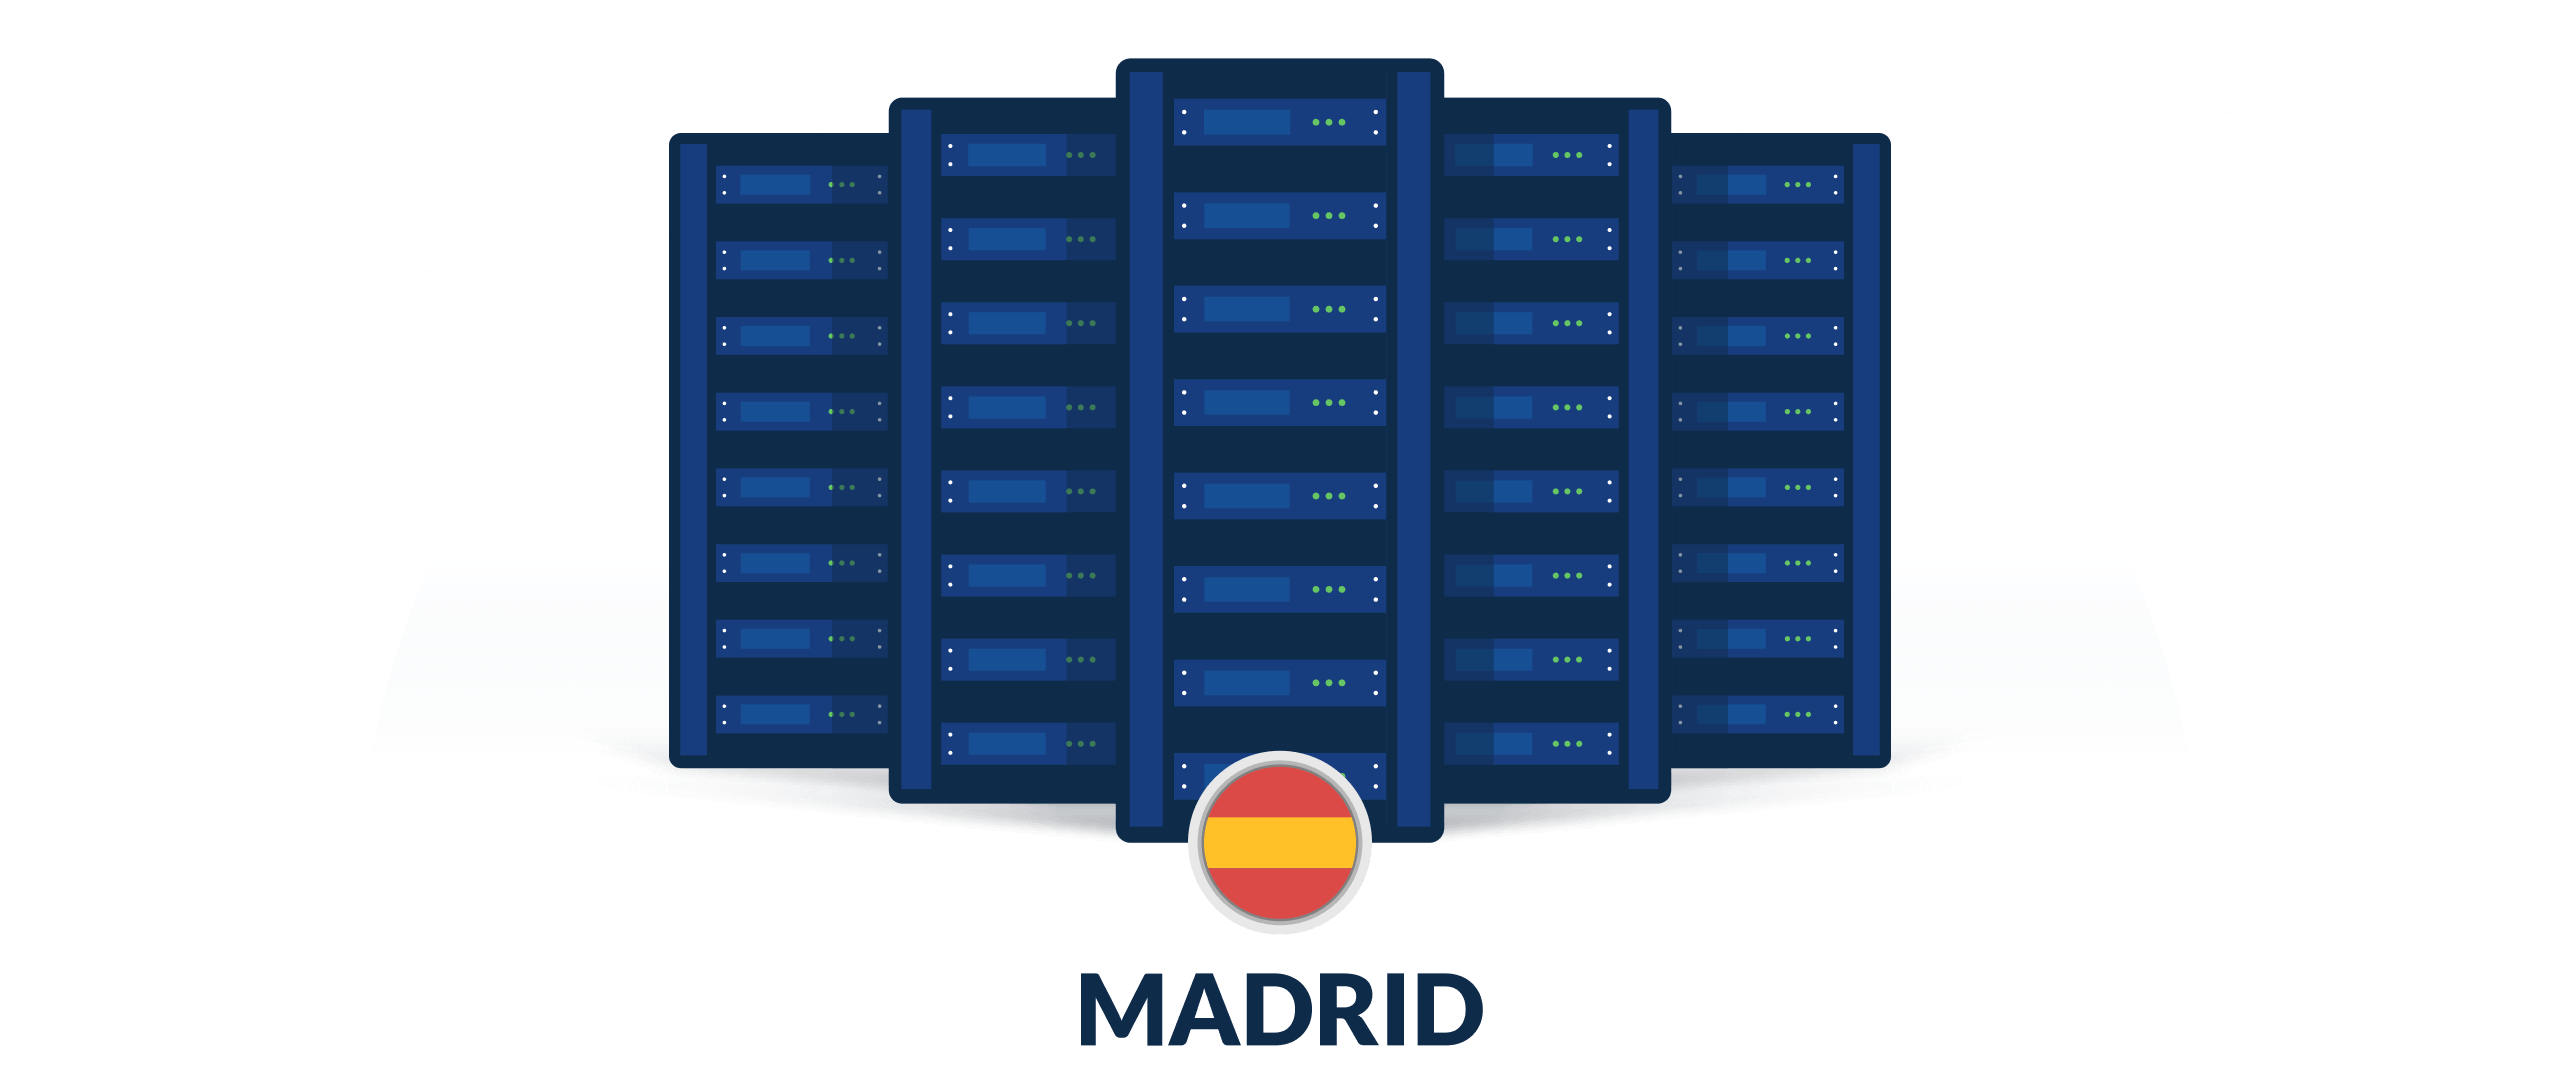 VPN servers in Madrid, Spain